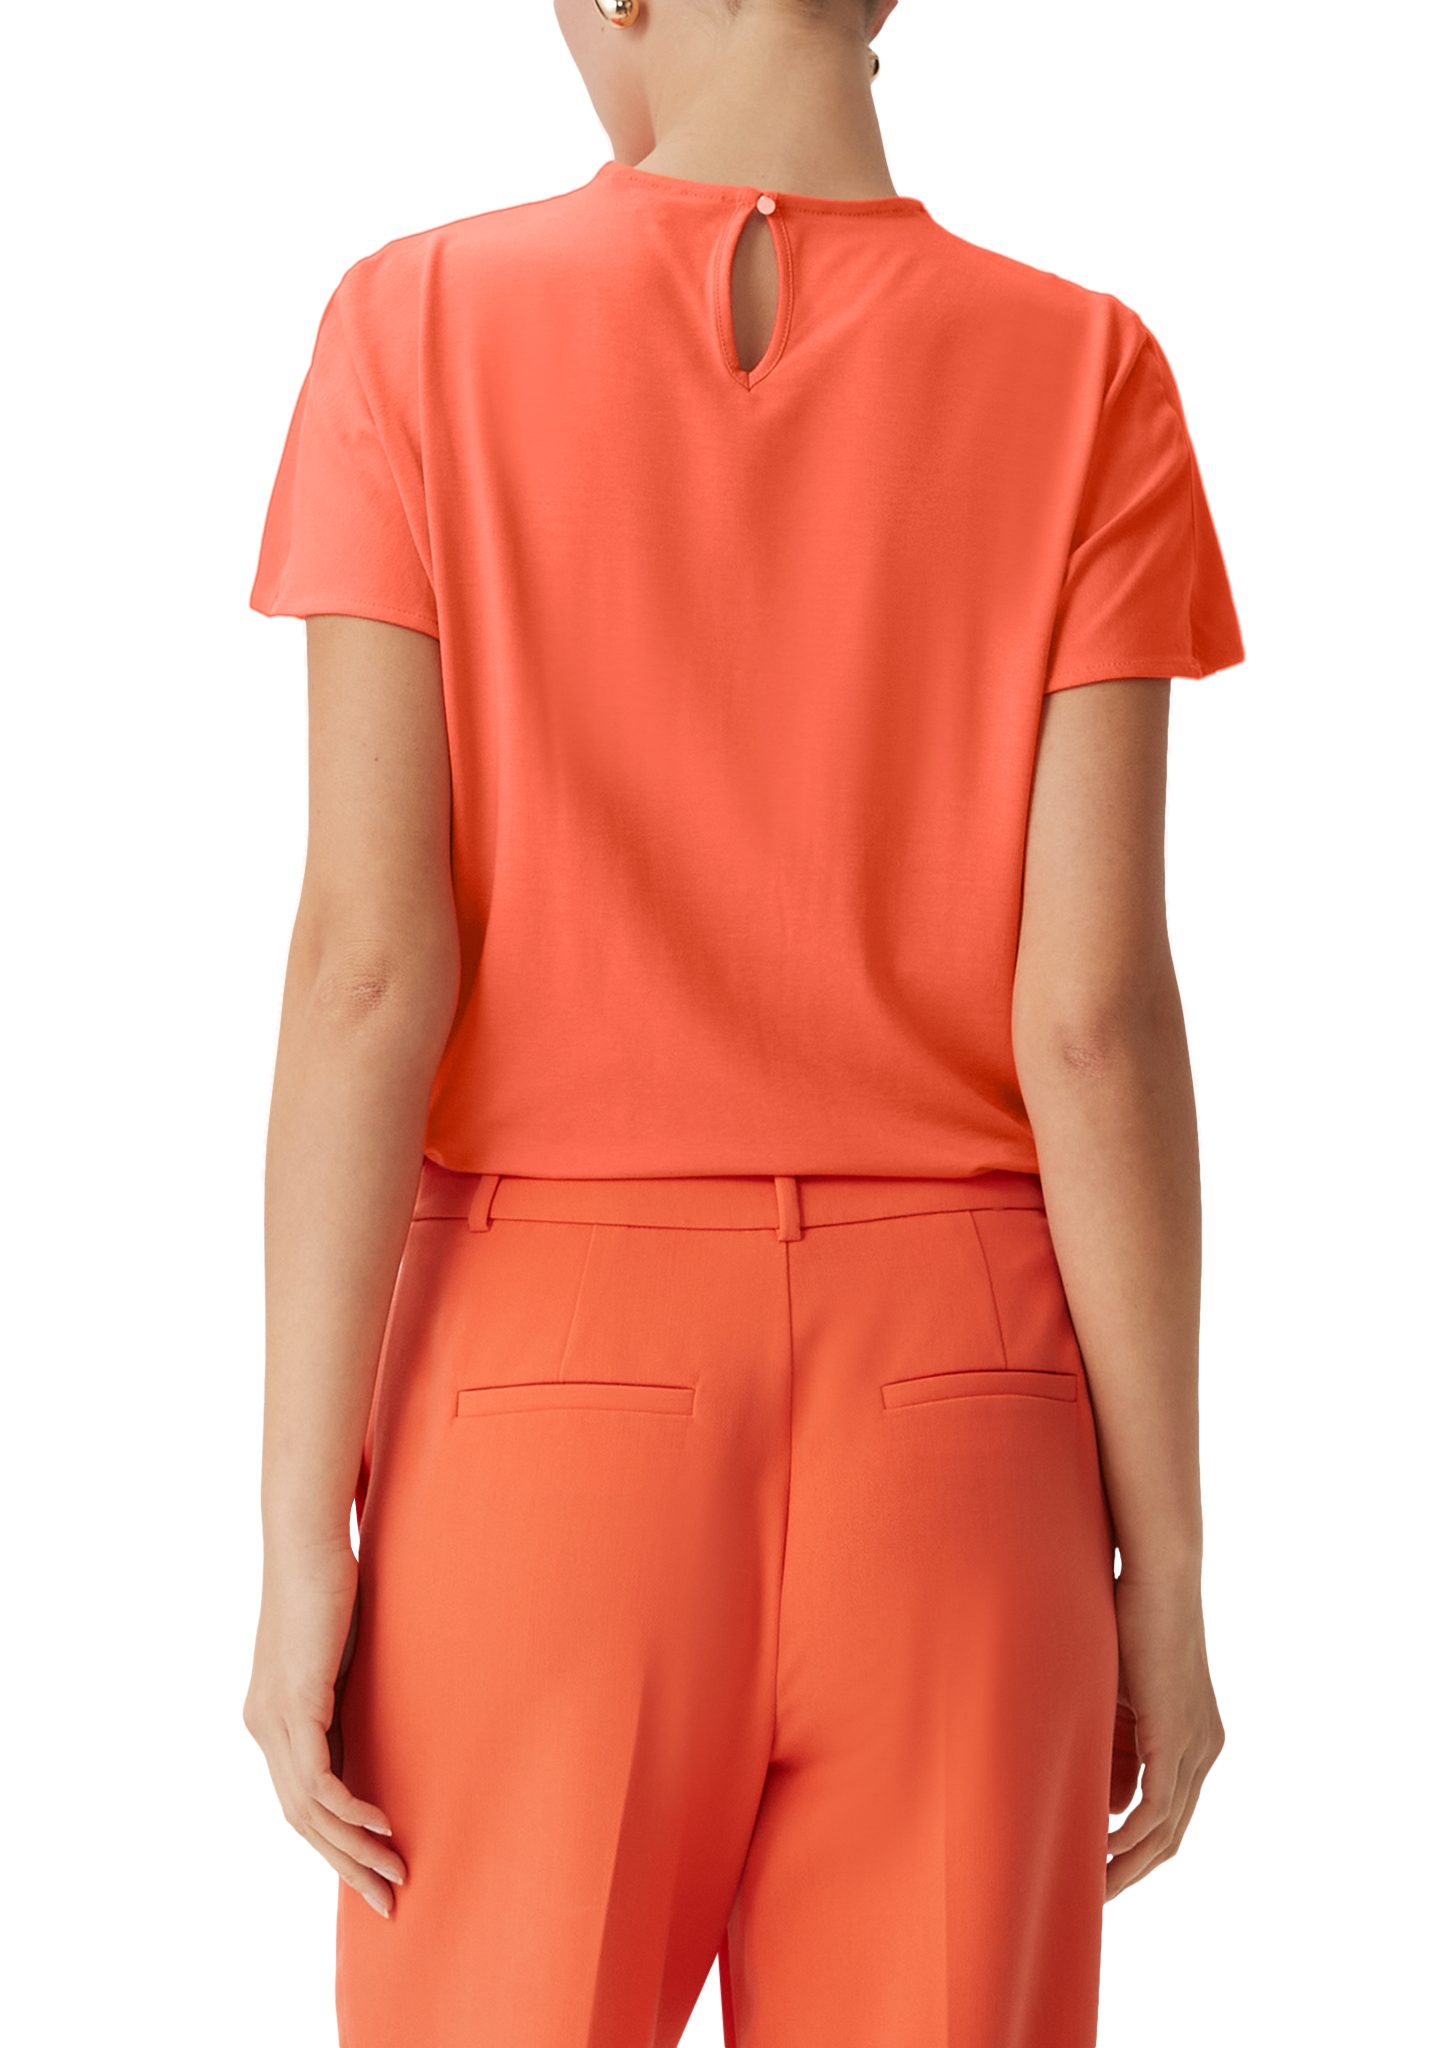 Kurzarmshirt im Comma Fabricmix orange Blusenshirt